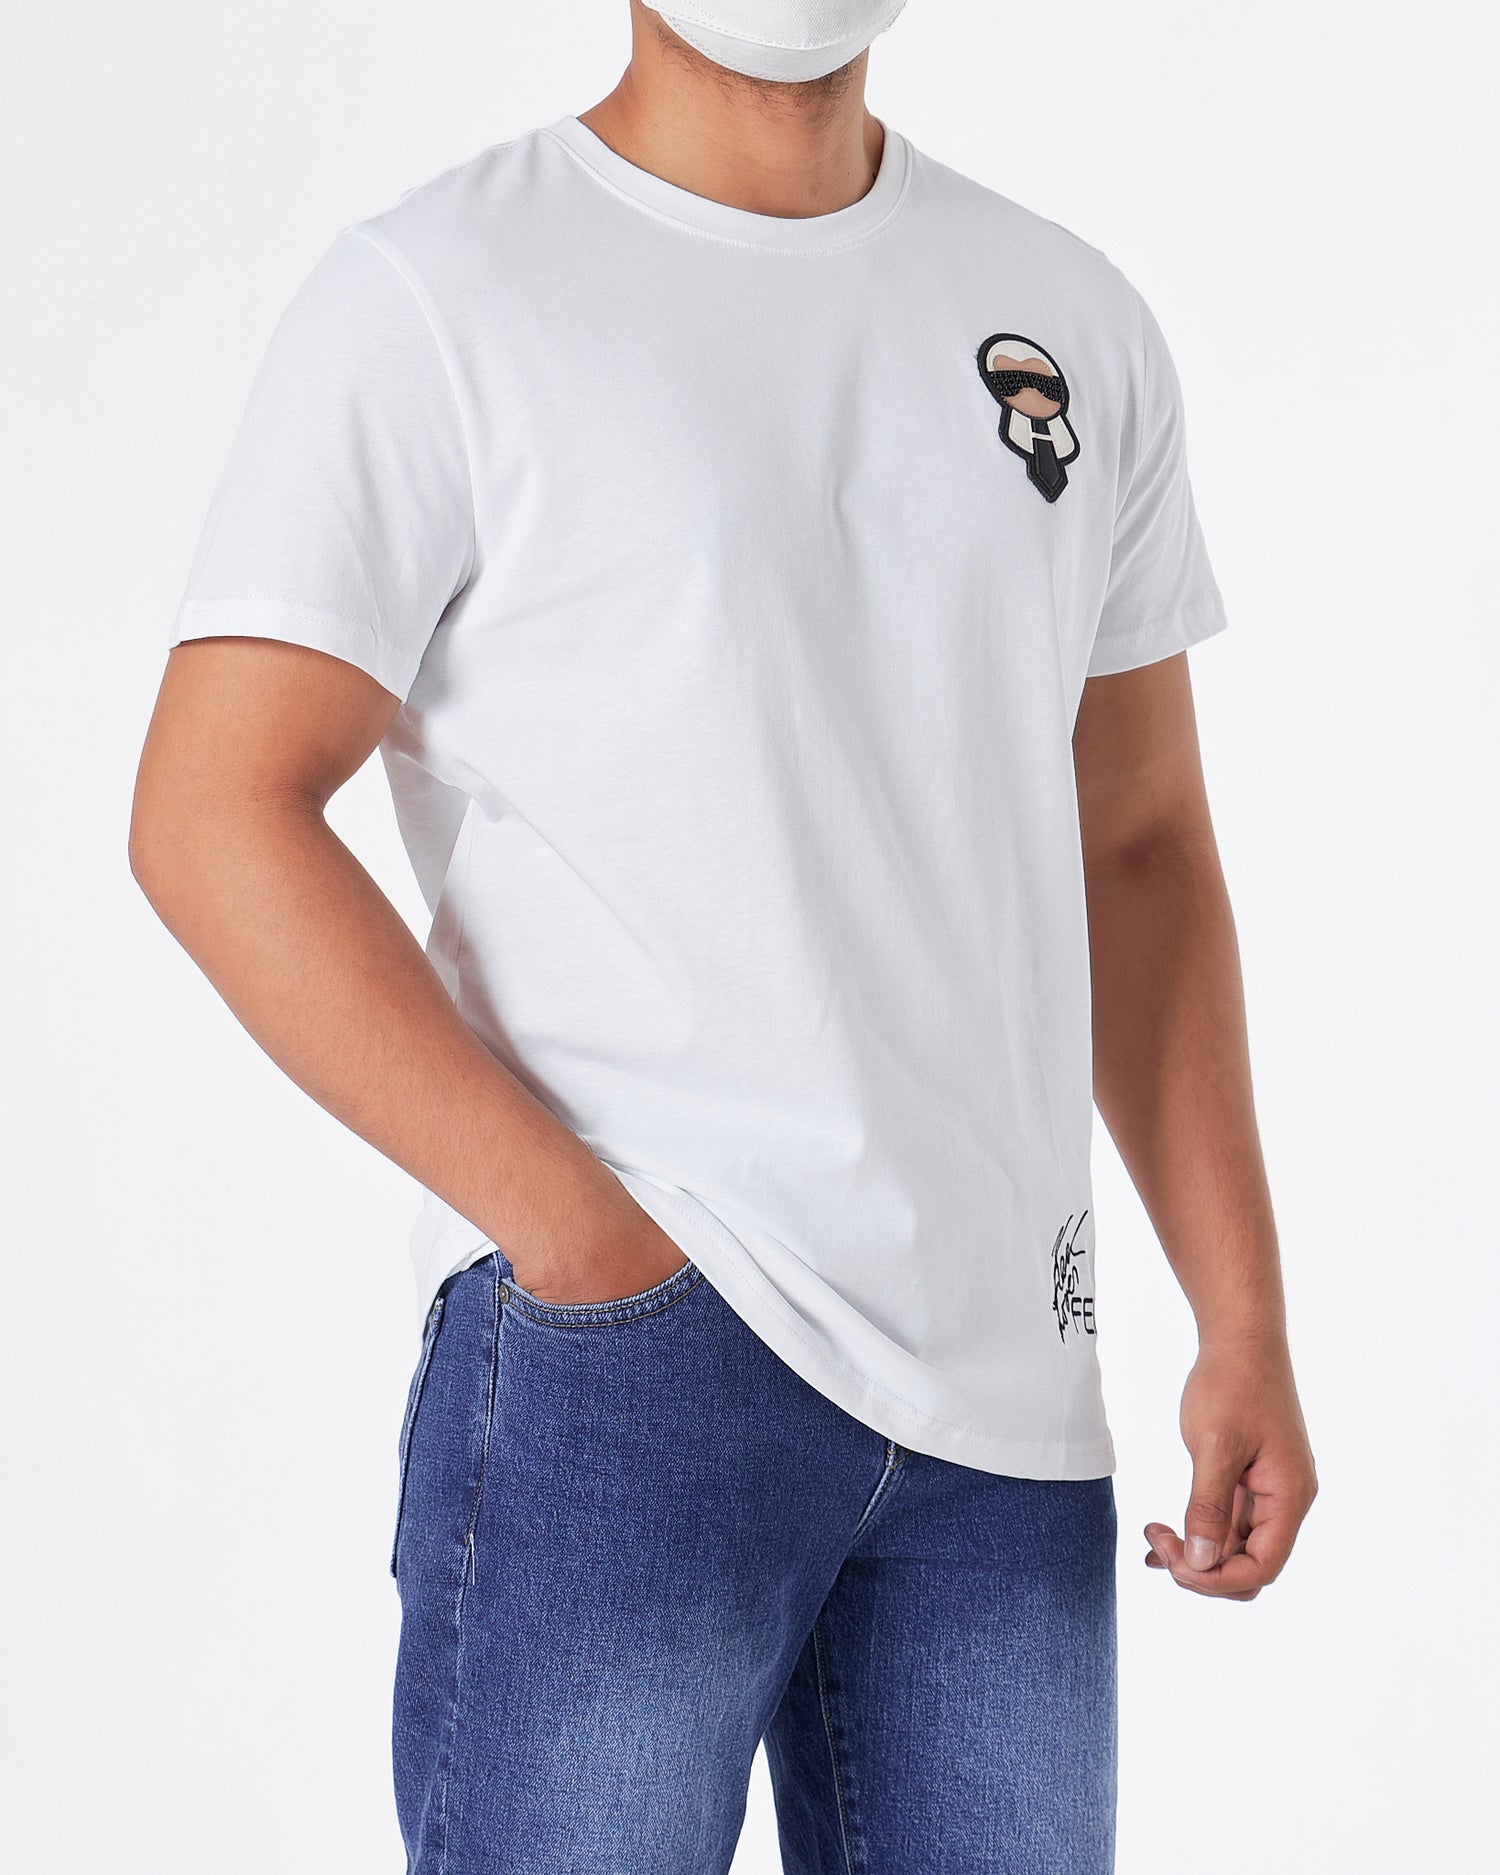 KAR Rhinestone Cartoon Men White T-Shirt 23.90